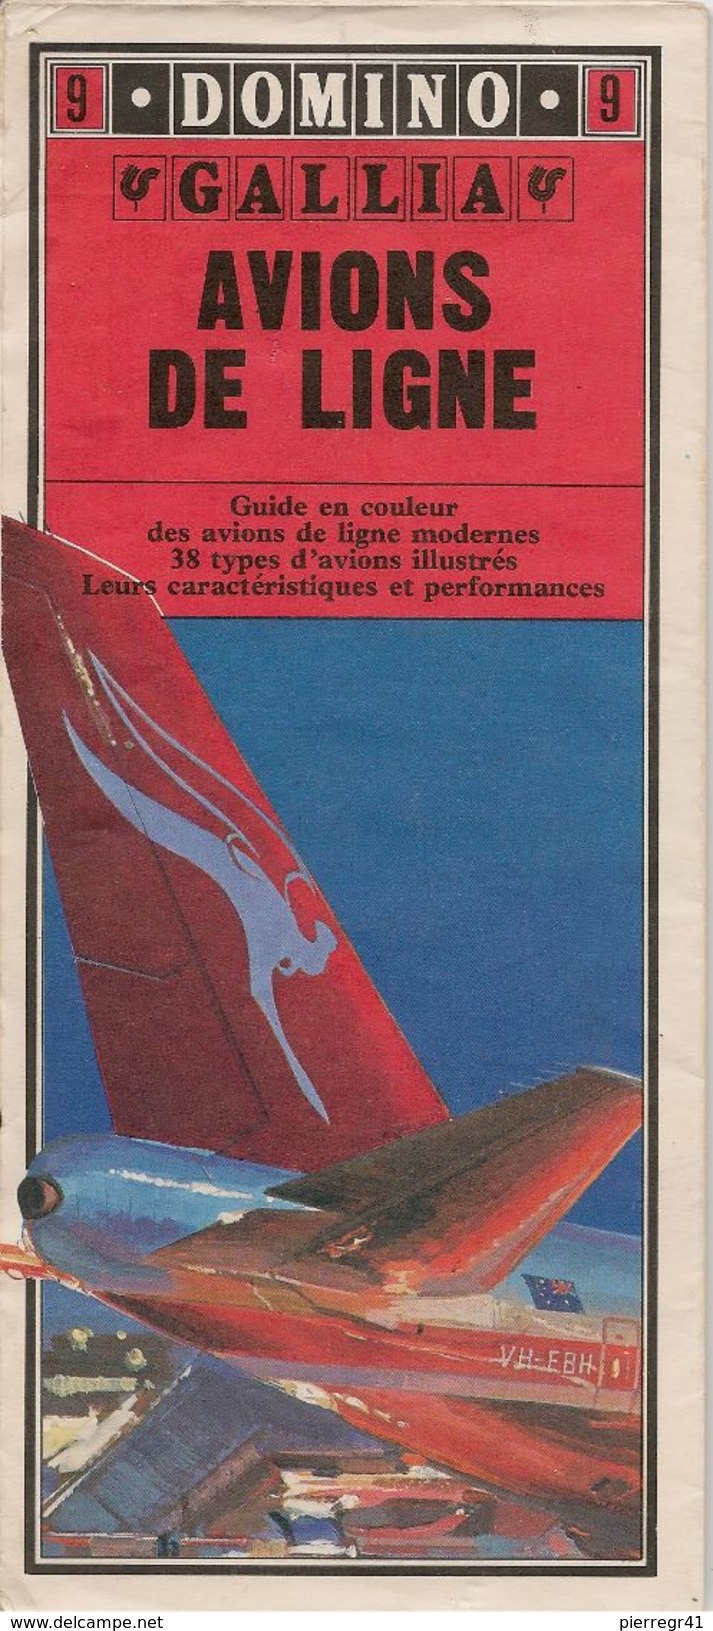 GUIDE-DOMINO-N°9-GALLIA-1979-AVIONS De LIGNE-38 Types D AVIONS De LIGNES MODERNES-Ft CARTE ROUTIERE-TBE- - Manuels